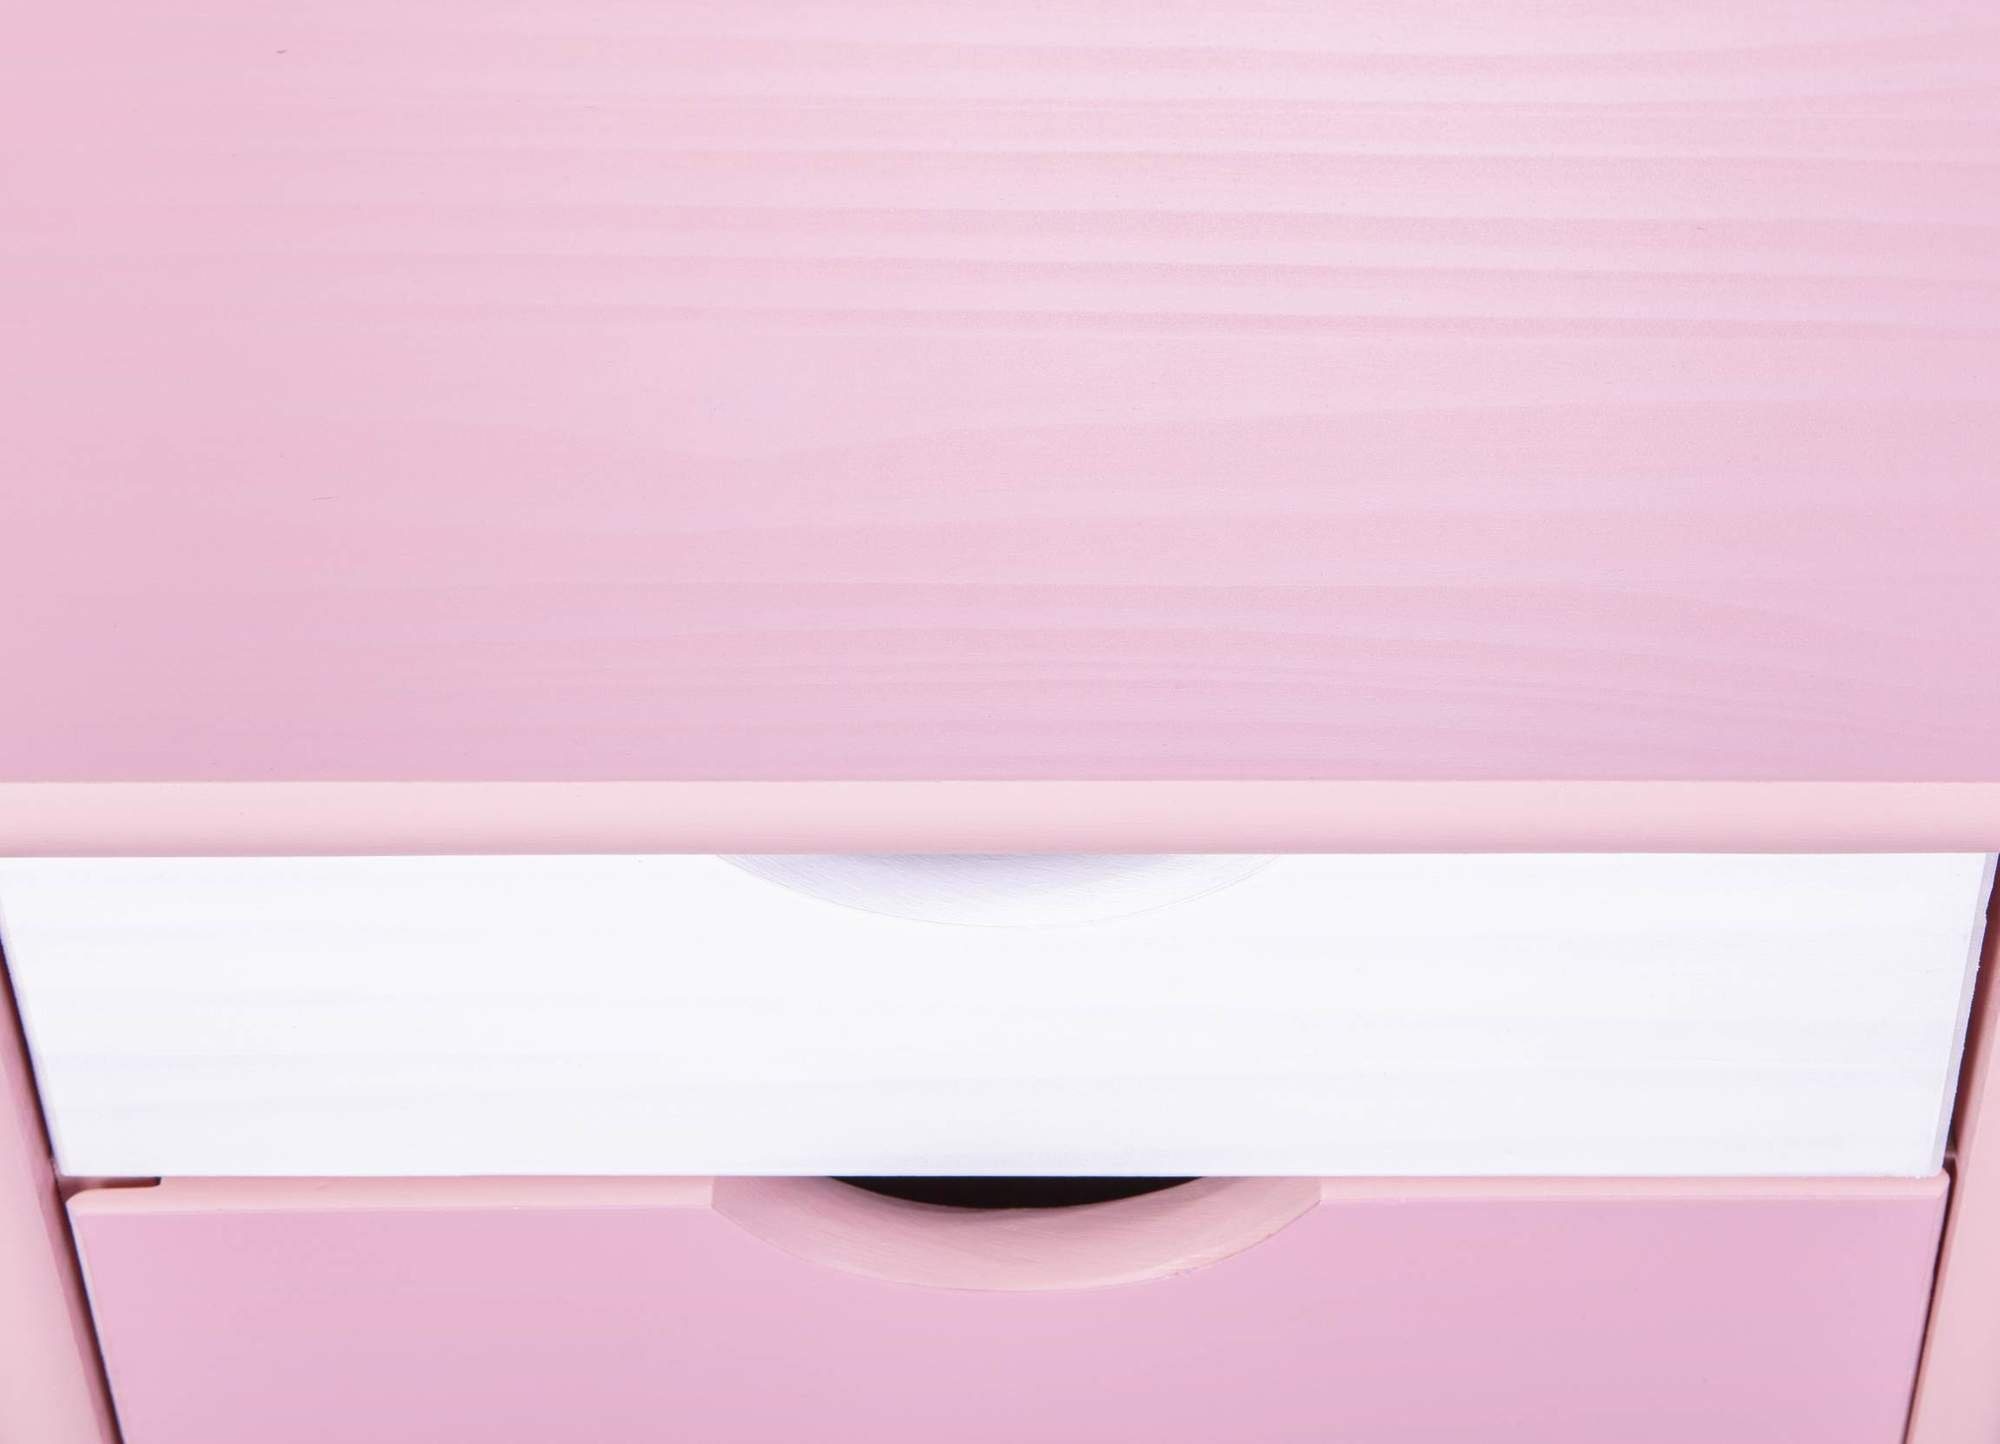 ebuy24 Inter Link Mehrzweckschrank Rollcontainer zu Pierre pink weiß Schreibtisch passend Cecilia